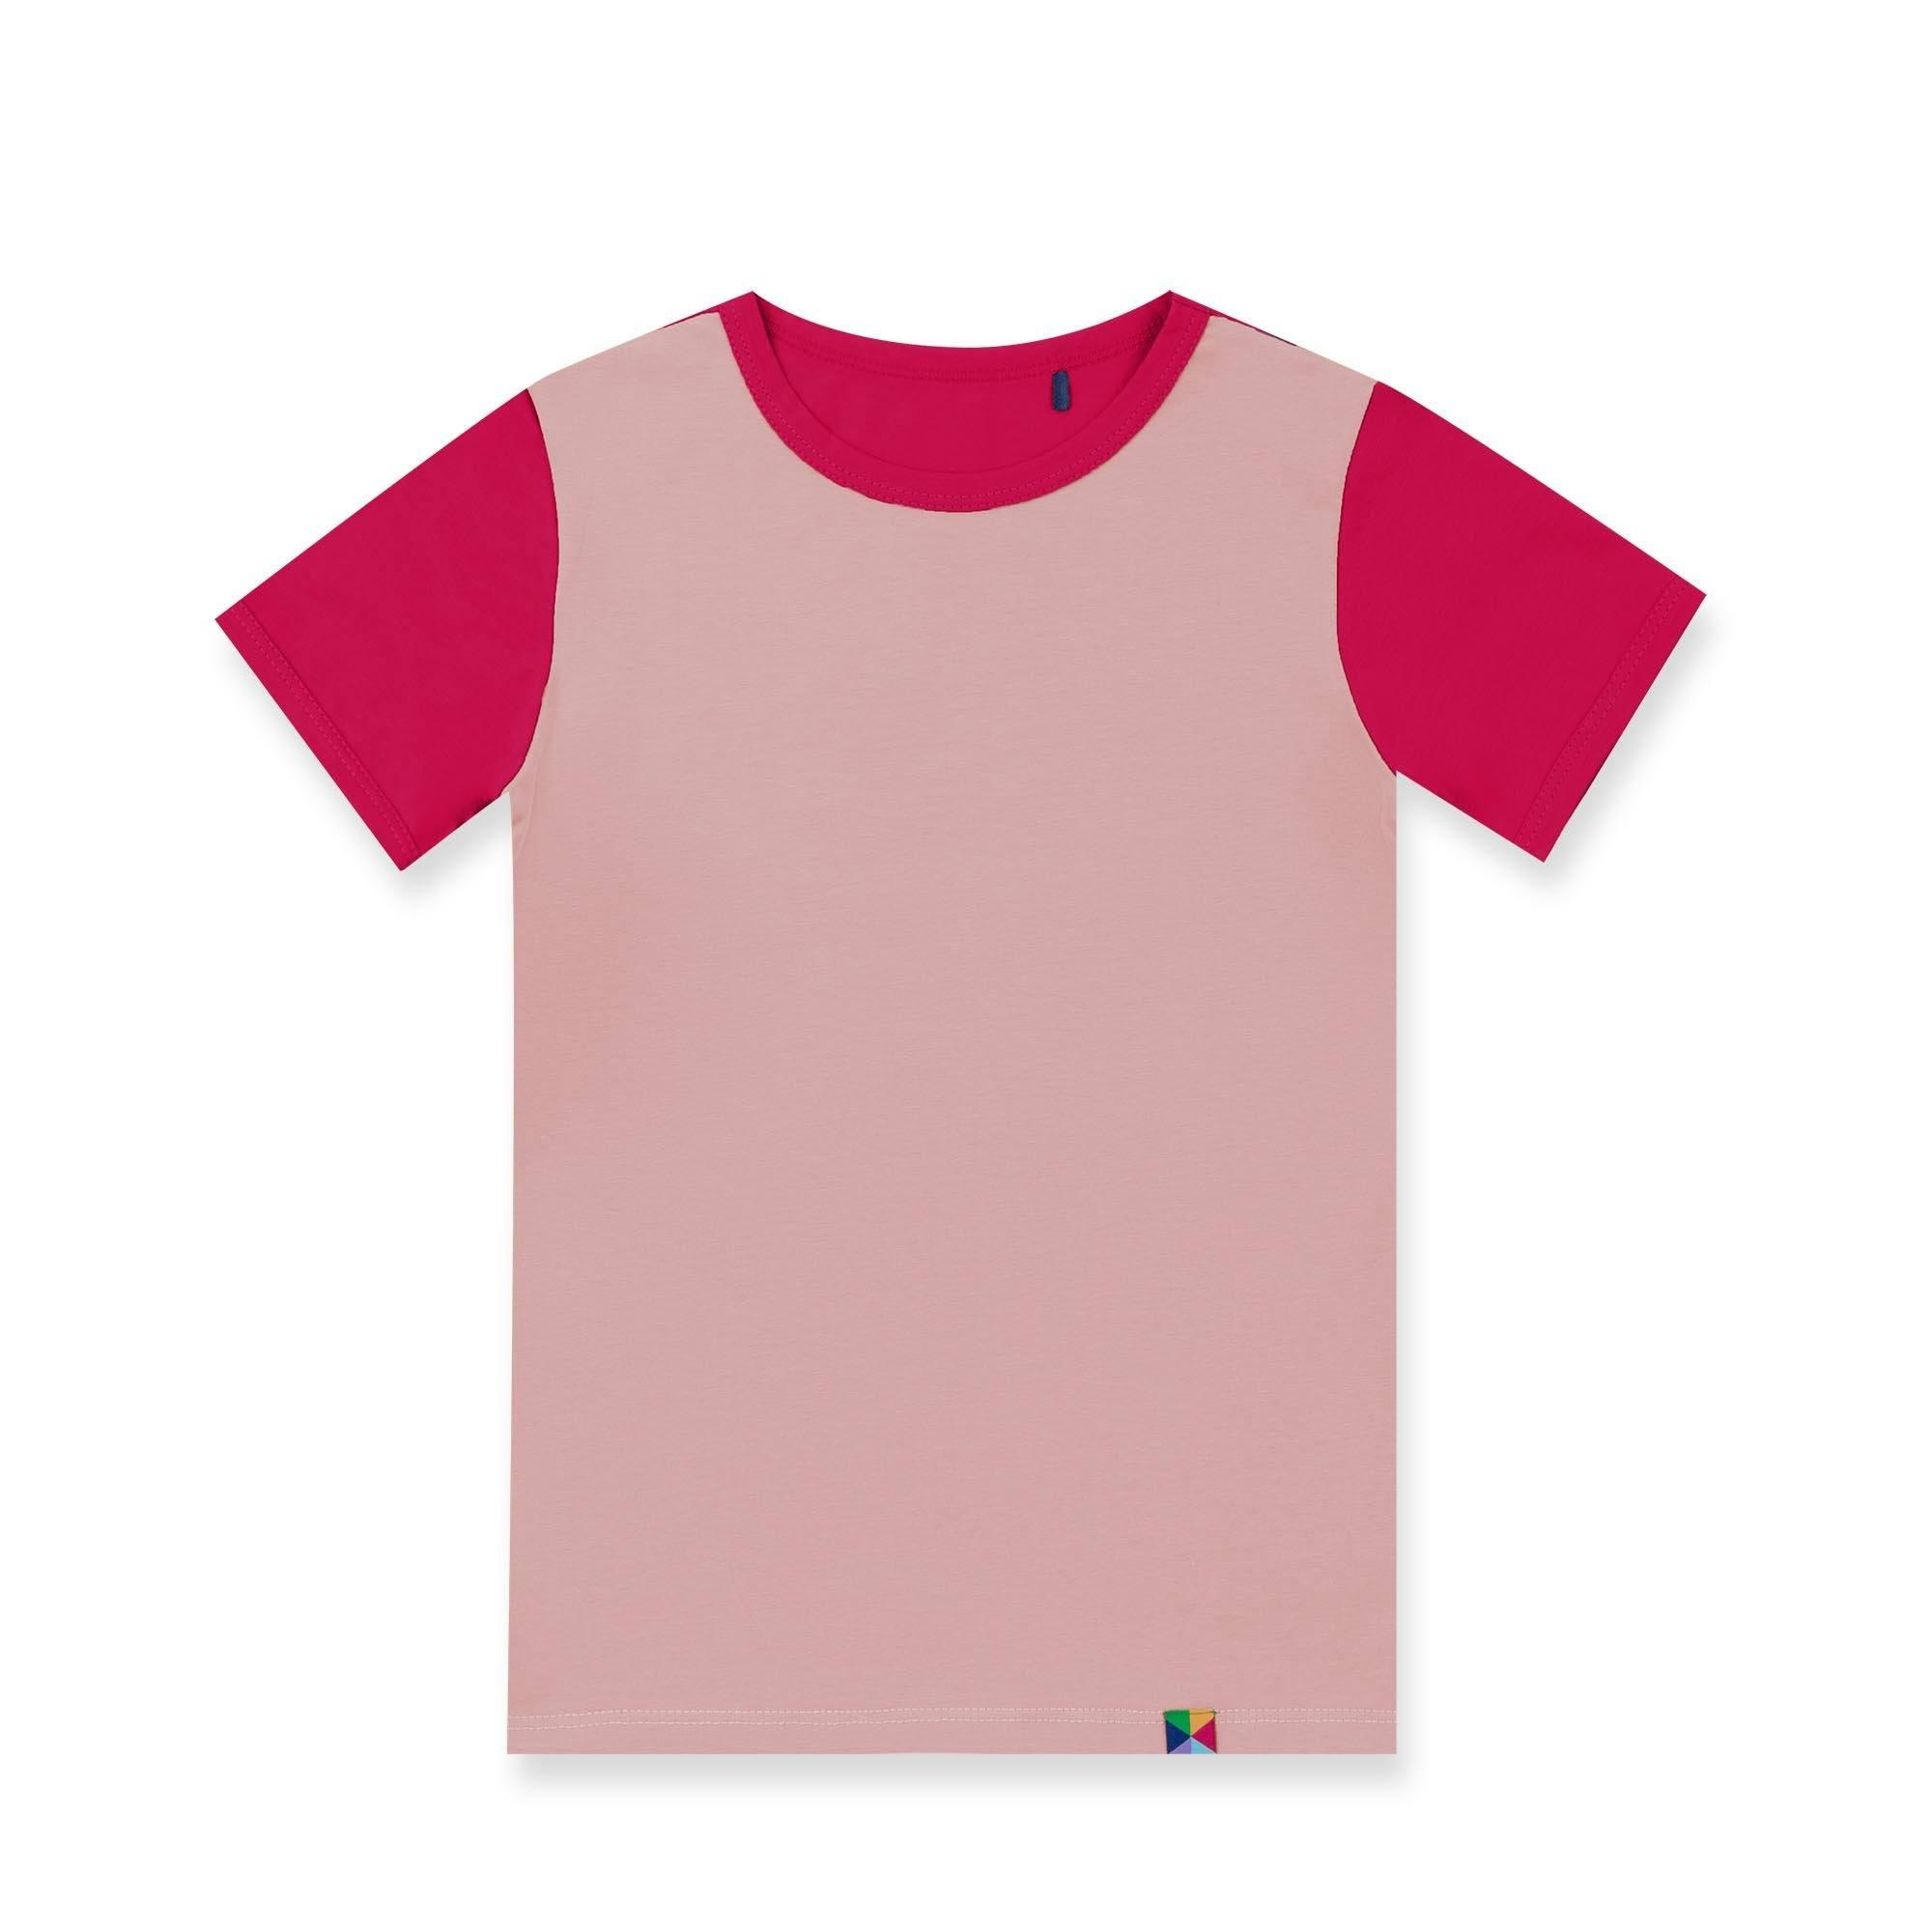 Pudroworóżowo-różowa koszulka dwukolorowa